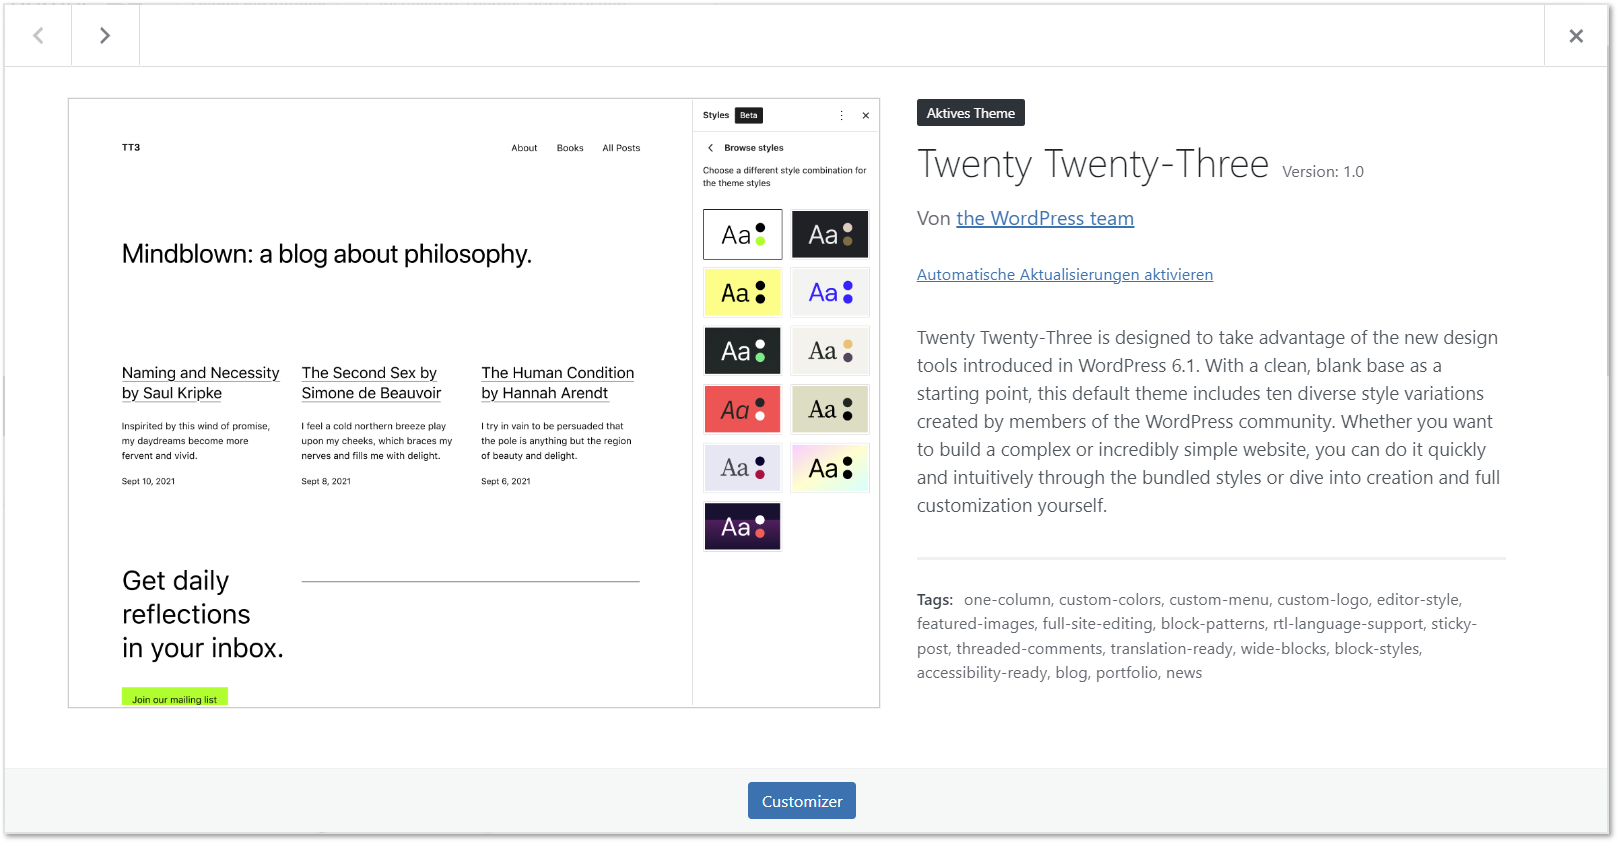 Vorschau des Twenty Twenty-Three Themes in WordPress 6.1